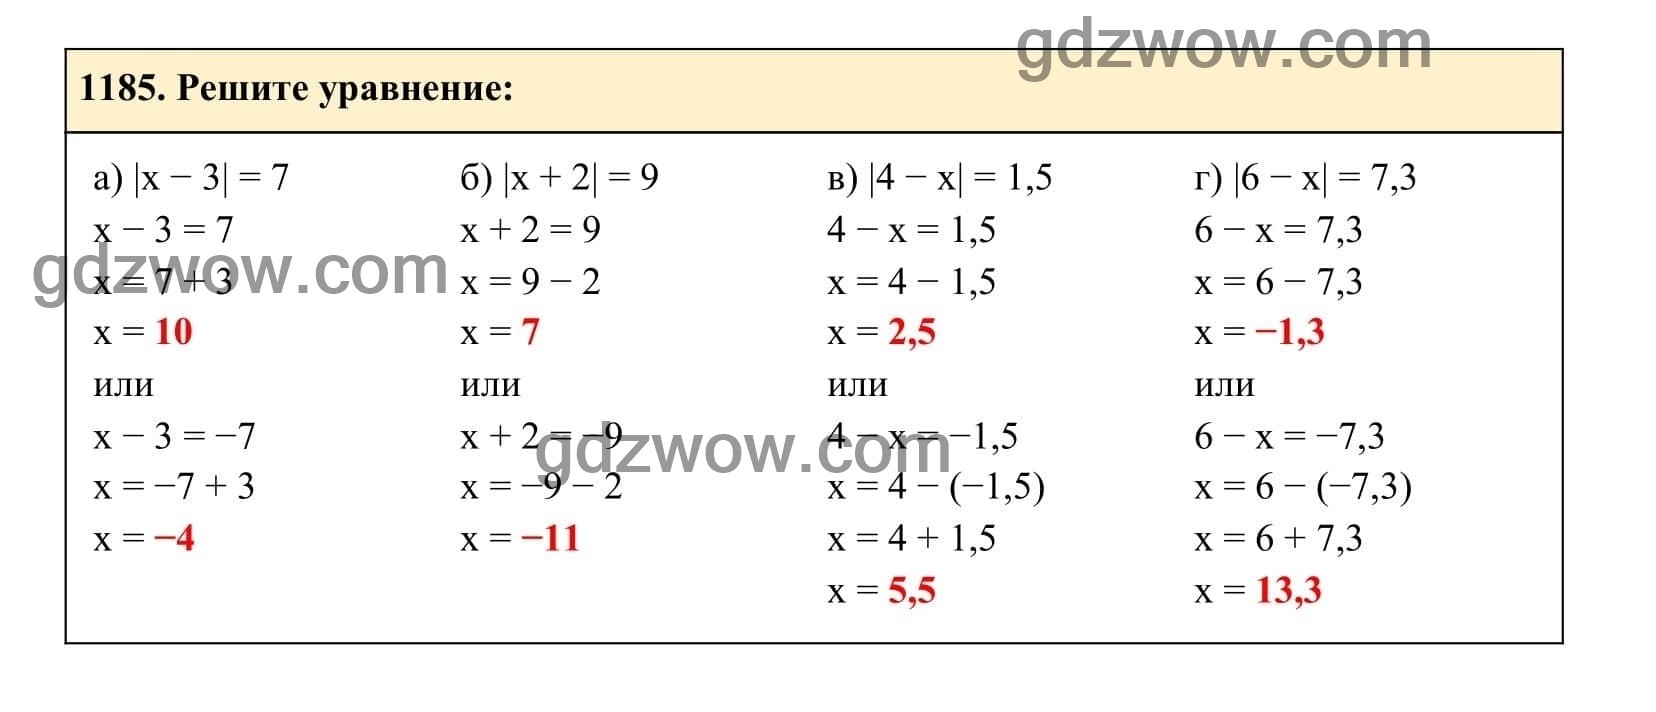 Упражнение 1185 - ГДЗ по Алгебре 7 класс Учебник Макарычев (решебник) - GDZwow